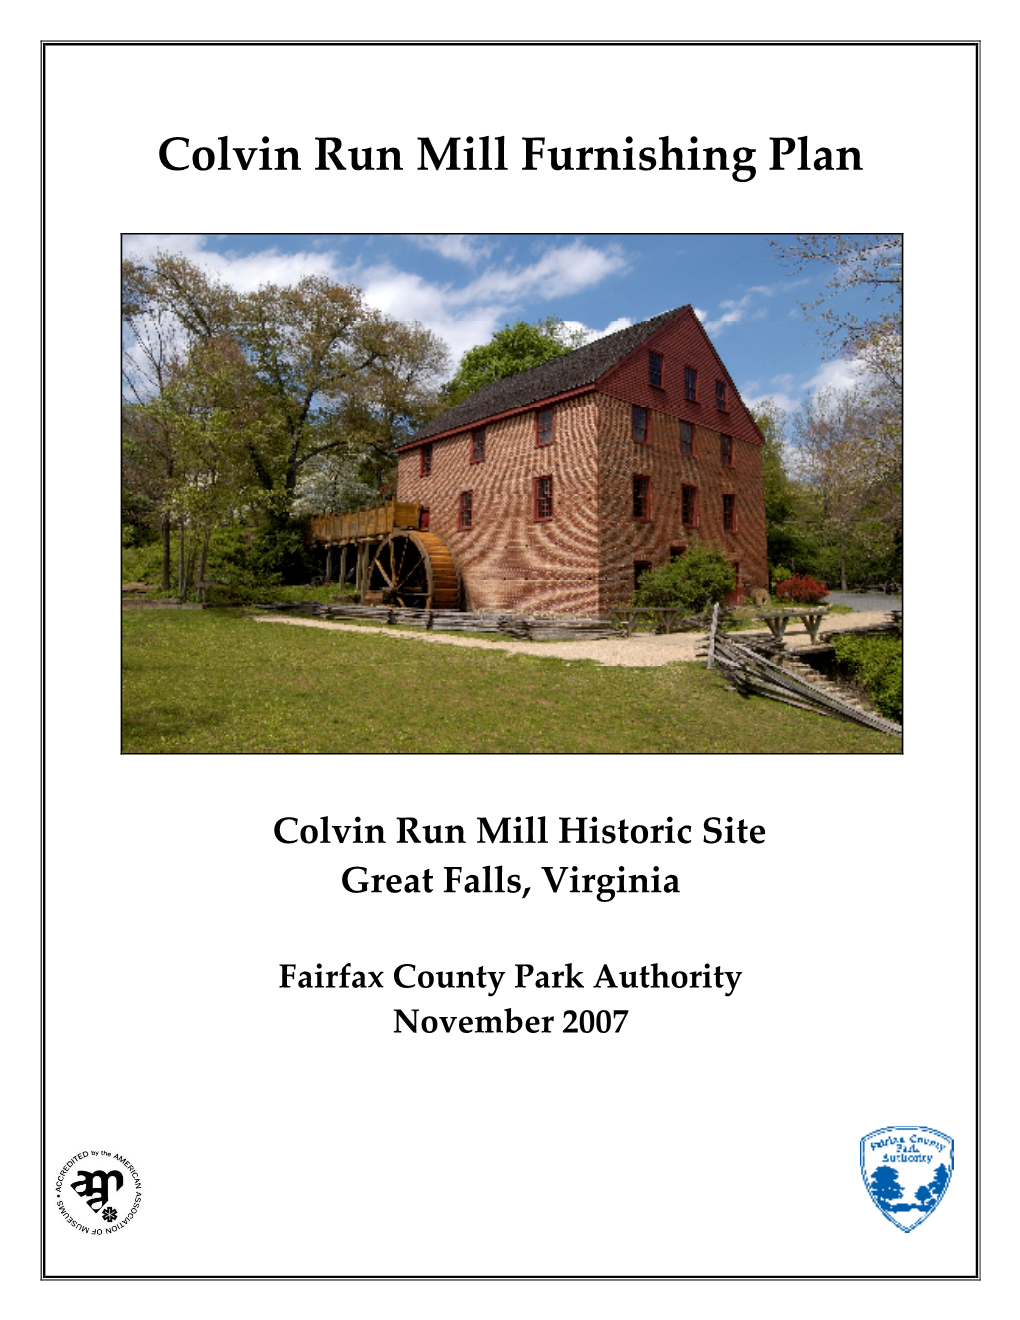 Colvin Run Mill Furnishing Plan